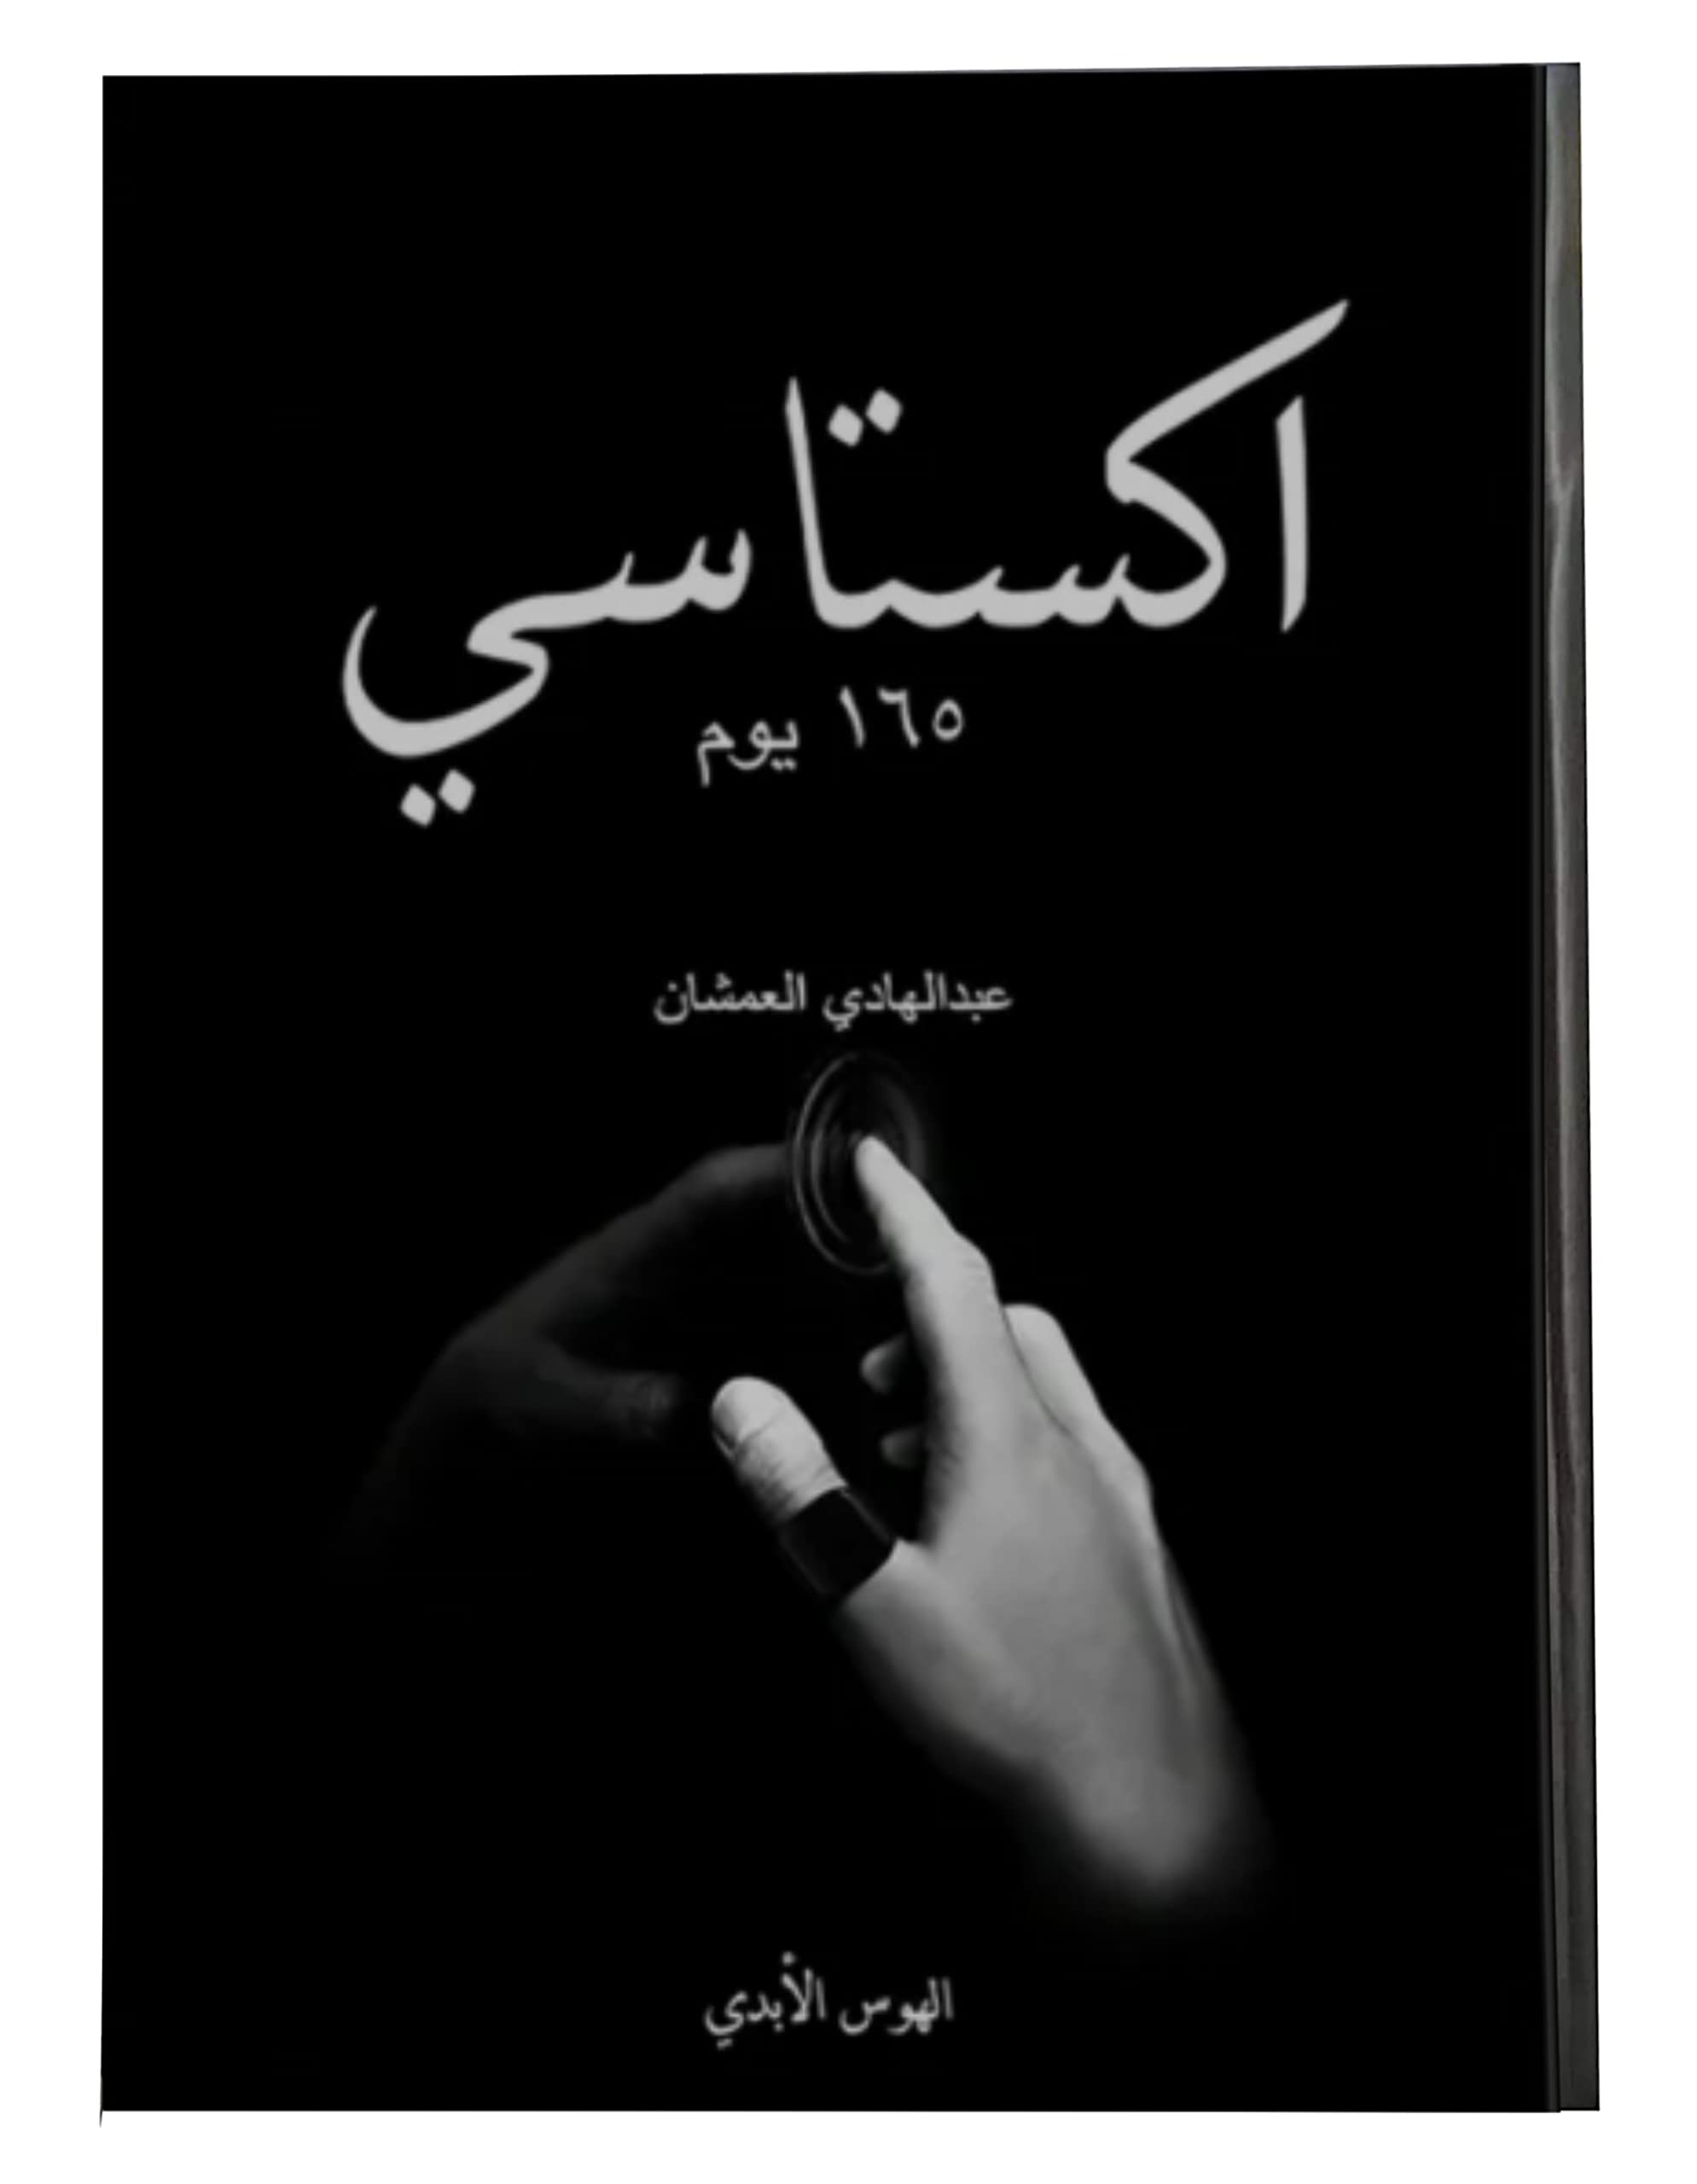 تحميل كتاب اكستاسي pdf للكاتب عبد الهادي العمشان